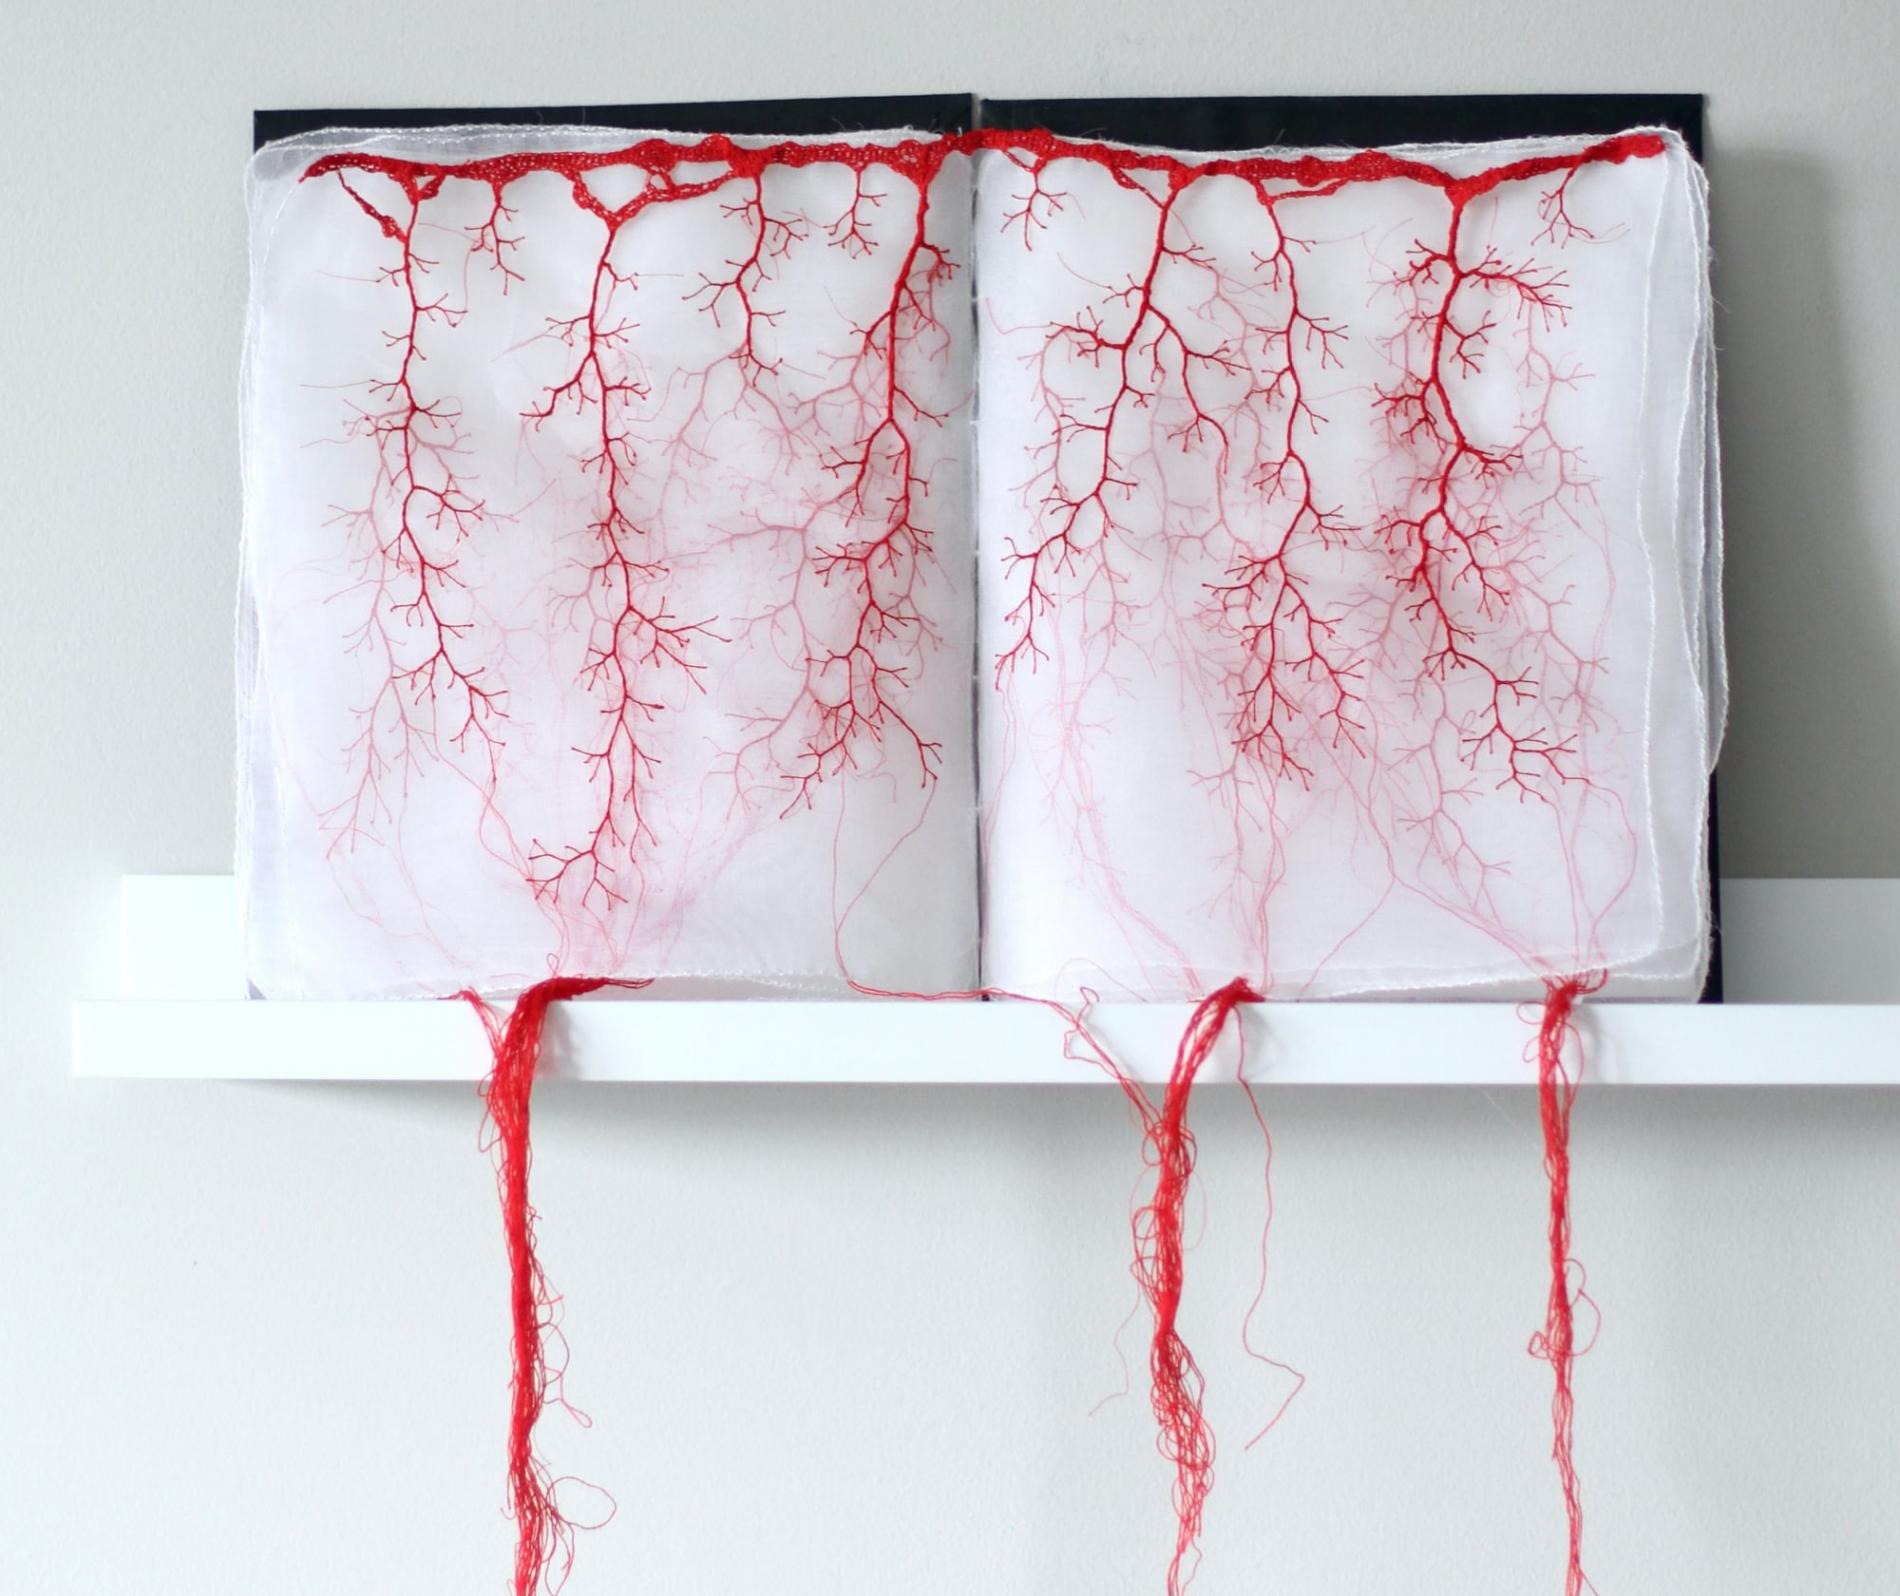 obra textil con hilos rojos en liobros de tela traslucida